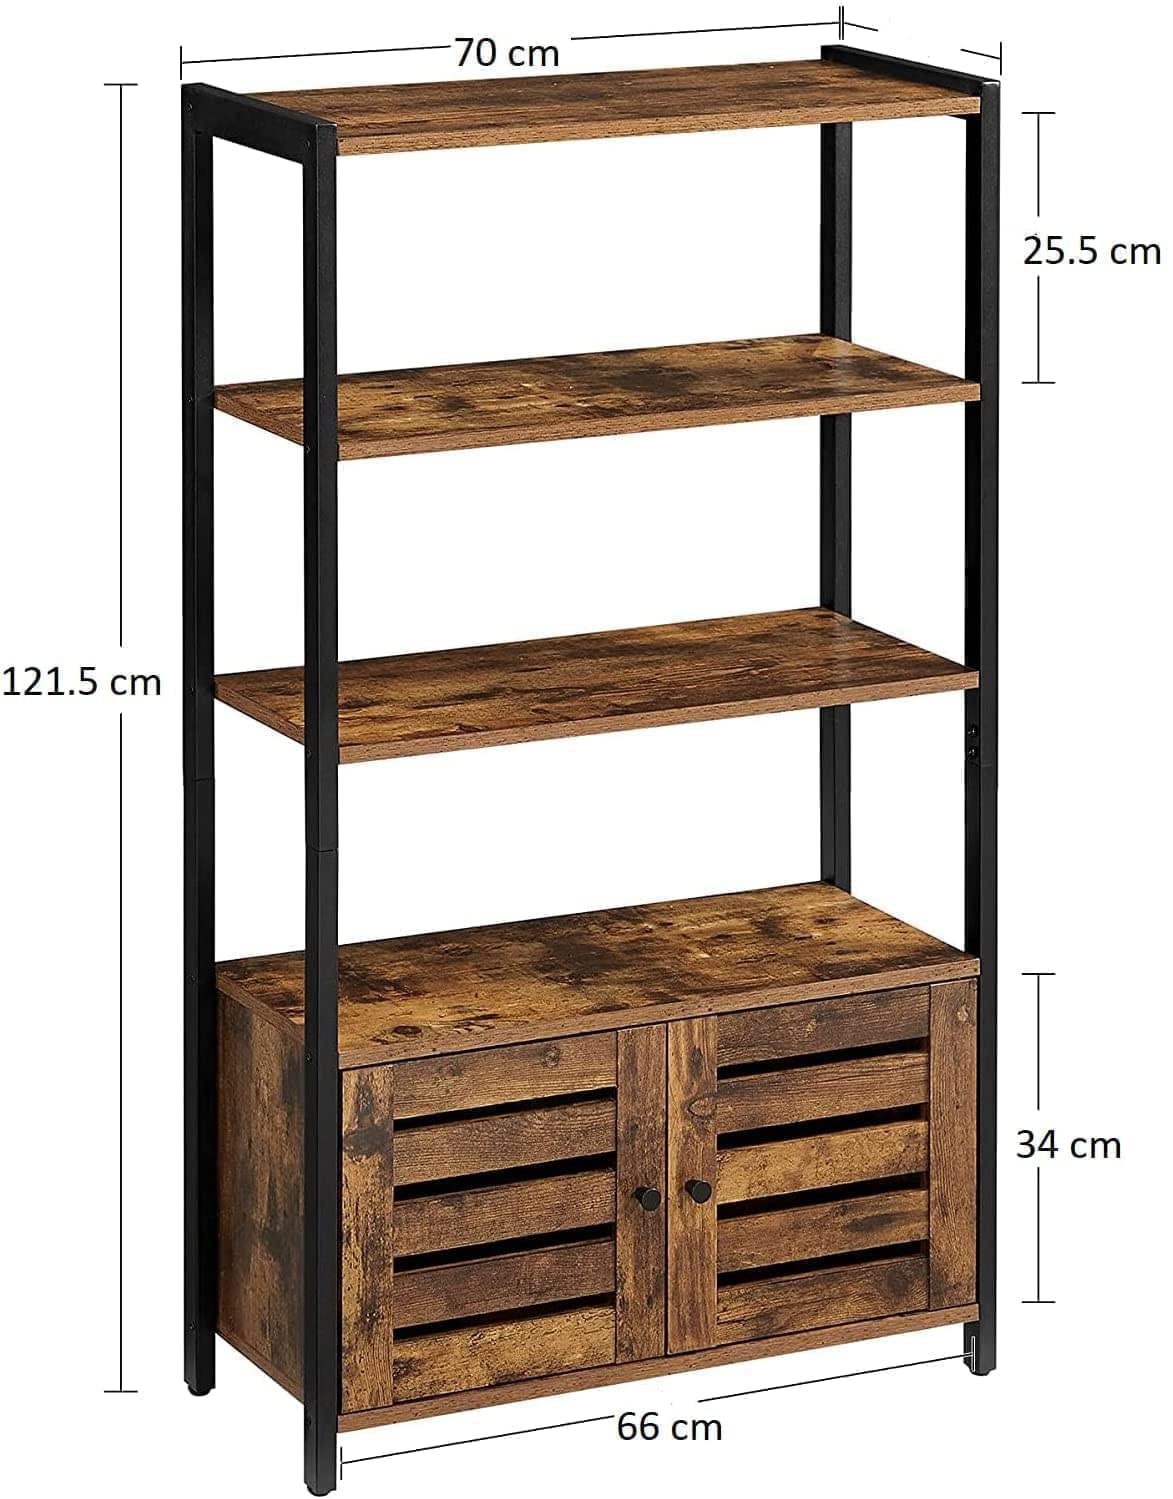 3 Tier Wooden Steel Industrial Style Book Shelf Cabinet Case Display Rack Unit 2 Door